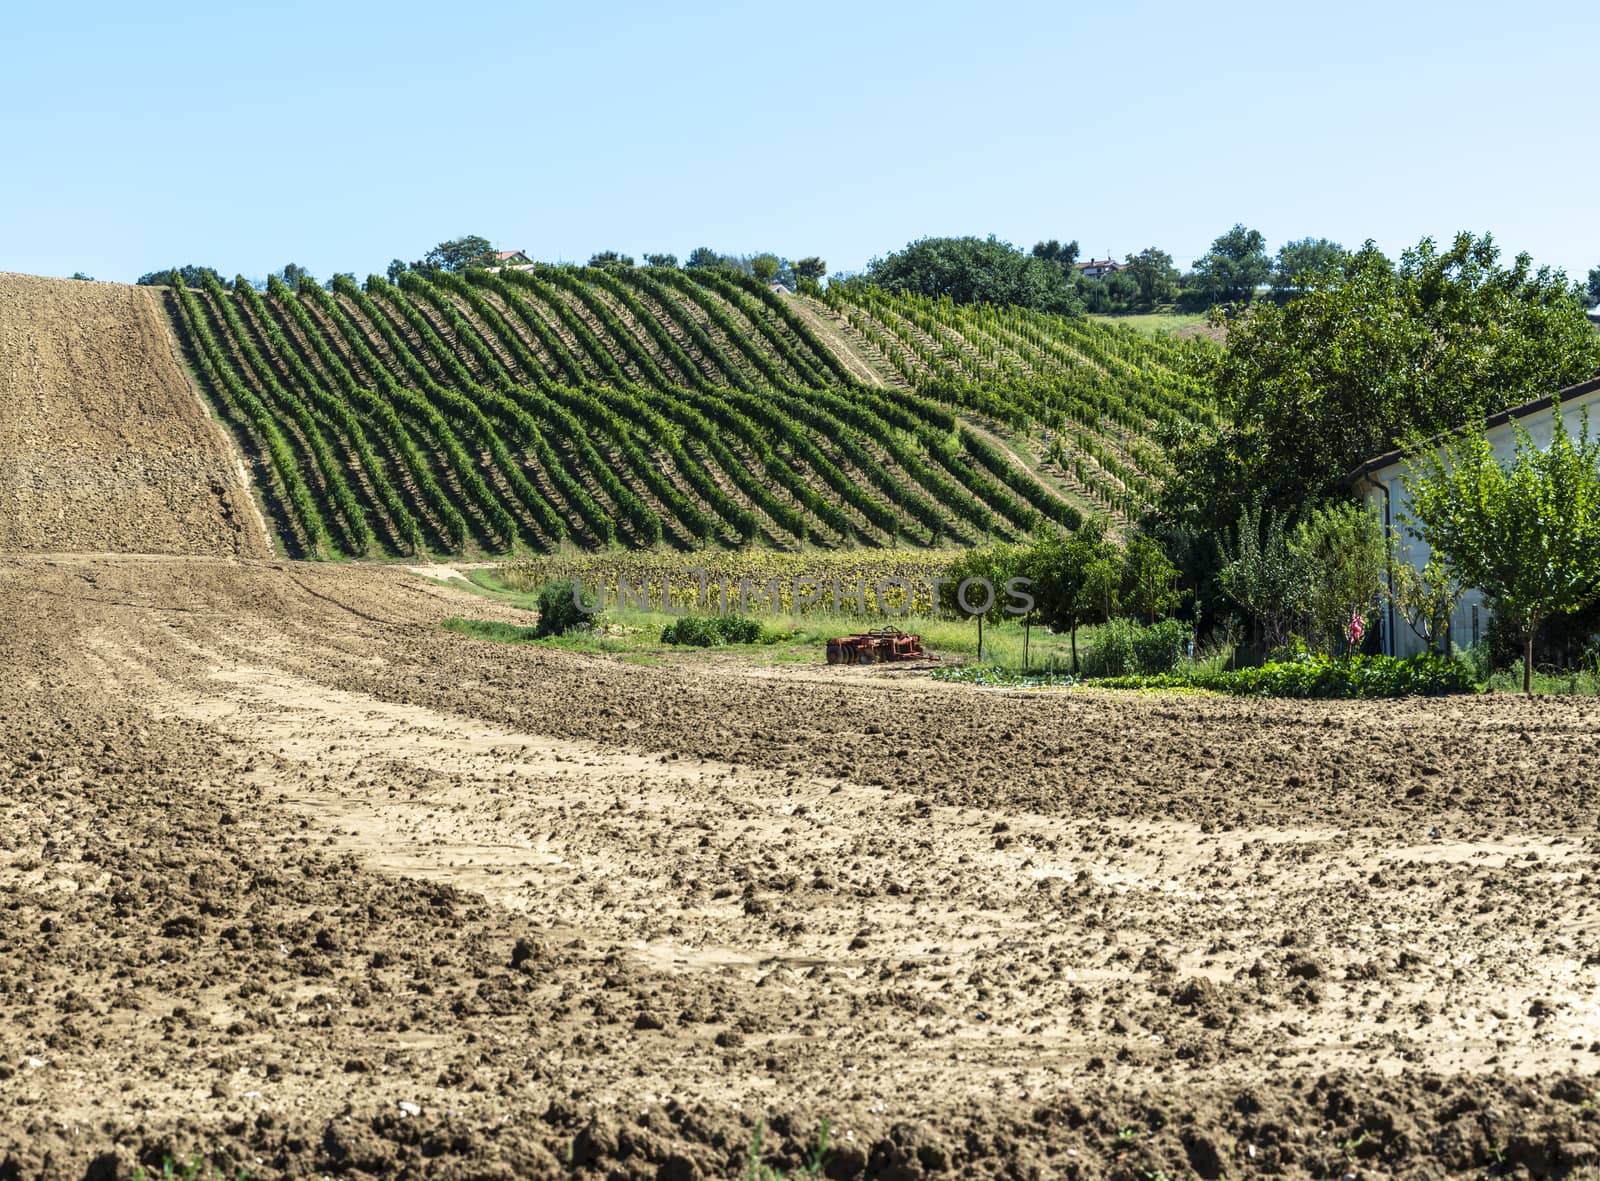 Vineyards in rows and Tilled ground soil.  by deyan_georgiev